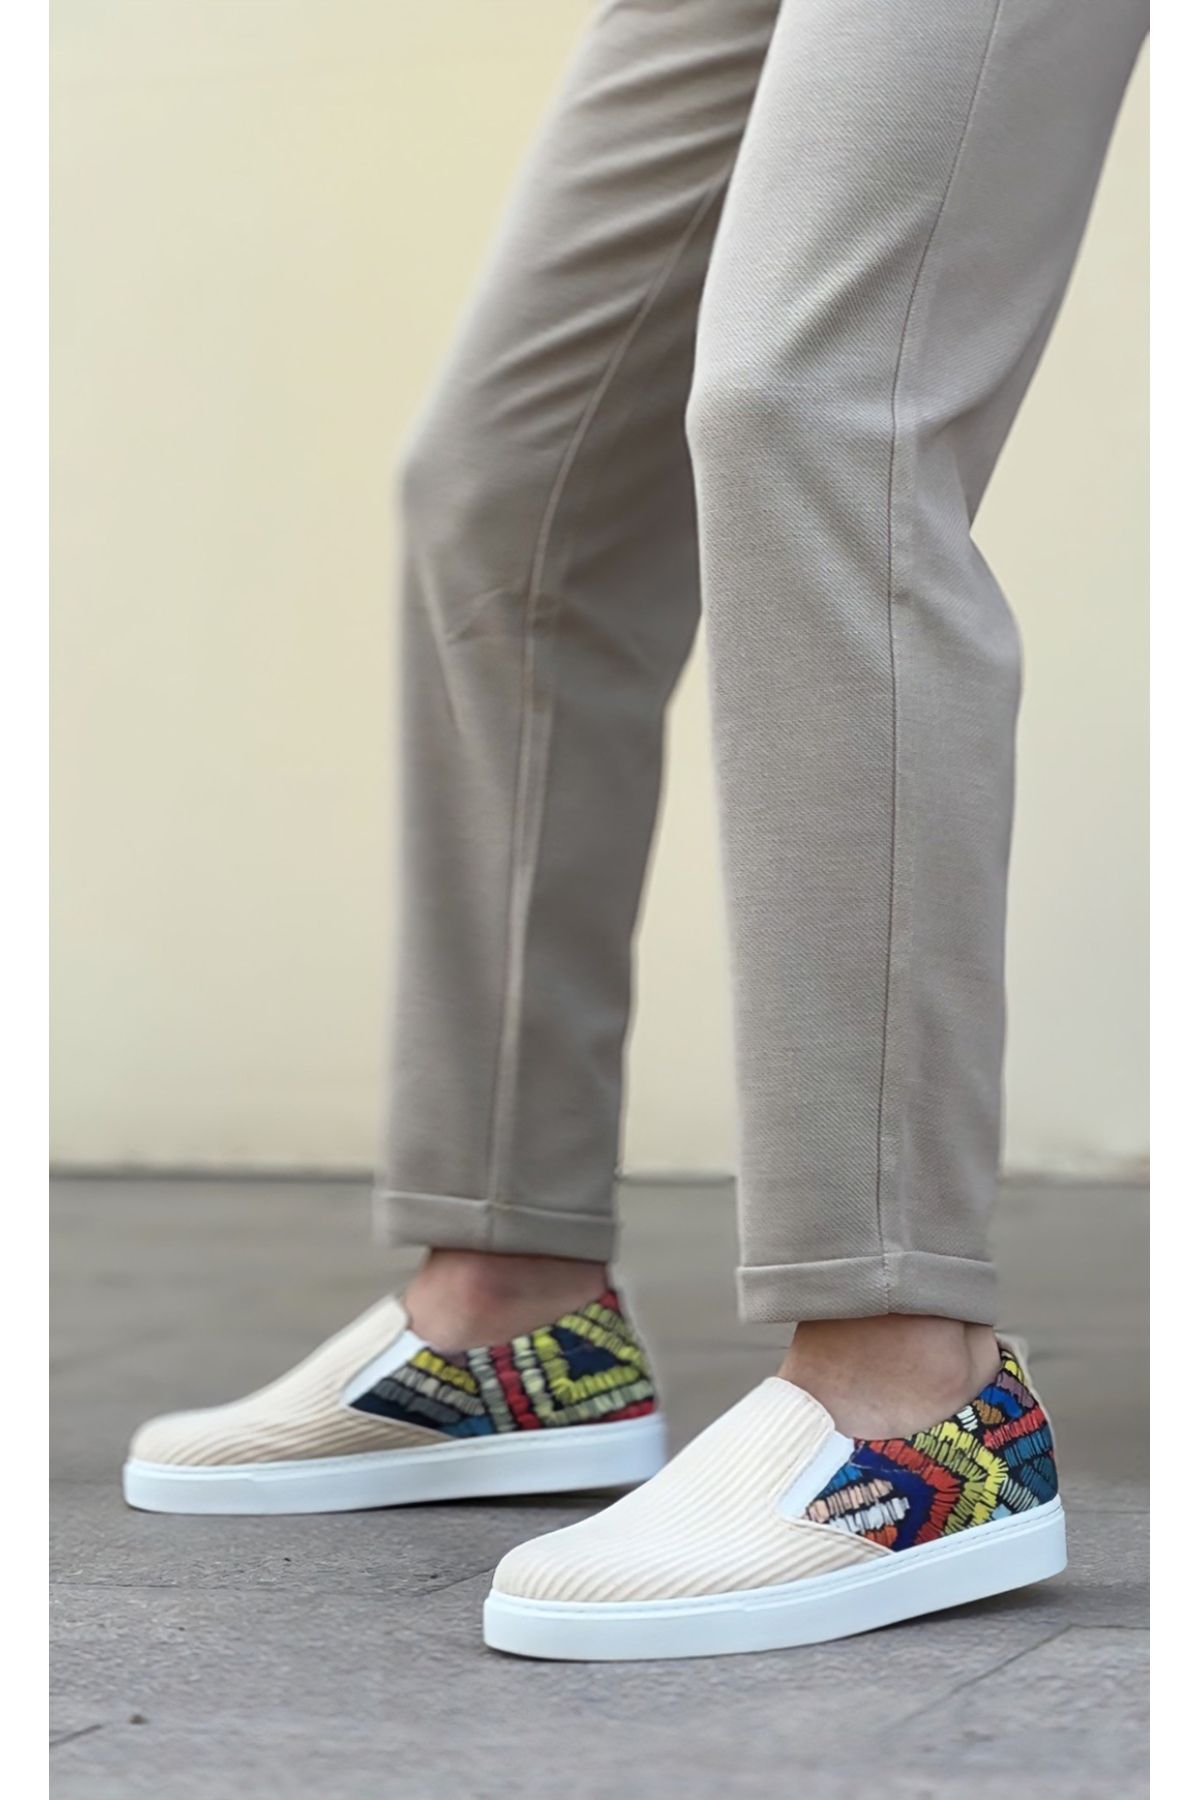 BOA BA0339 Bağcıksız Keten Krem Renkli Desenli Beyaz Taban Günlük Erkek Ayakkabı